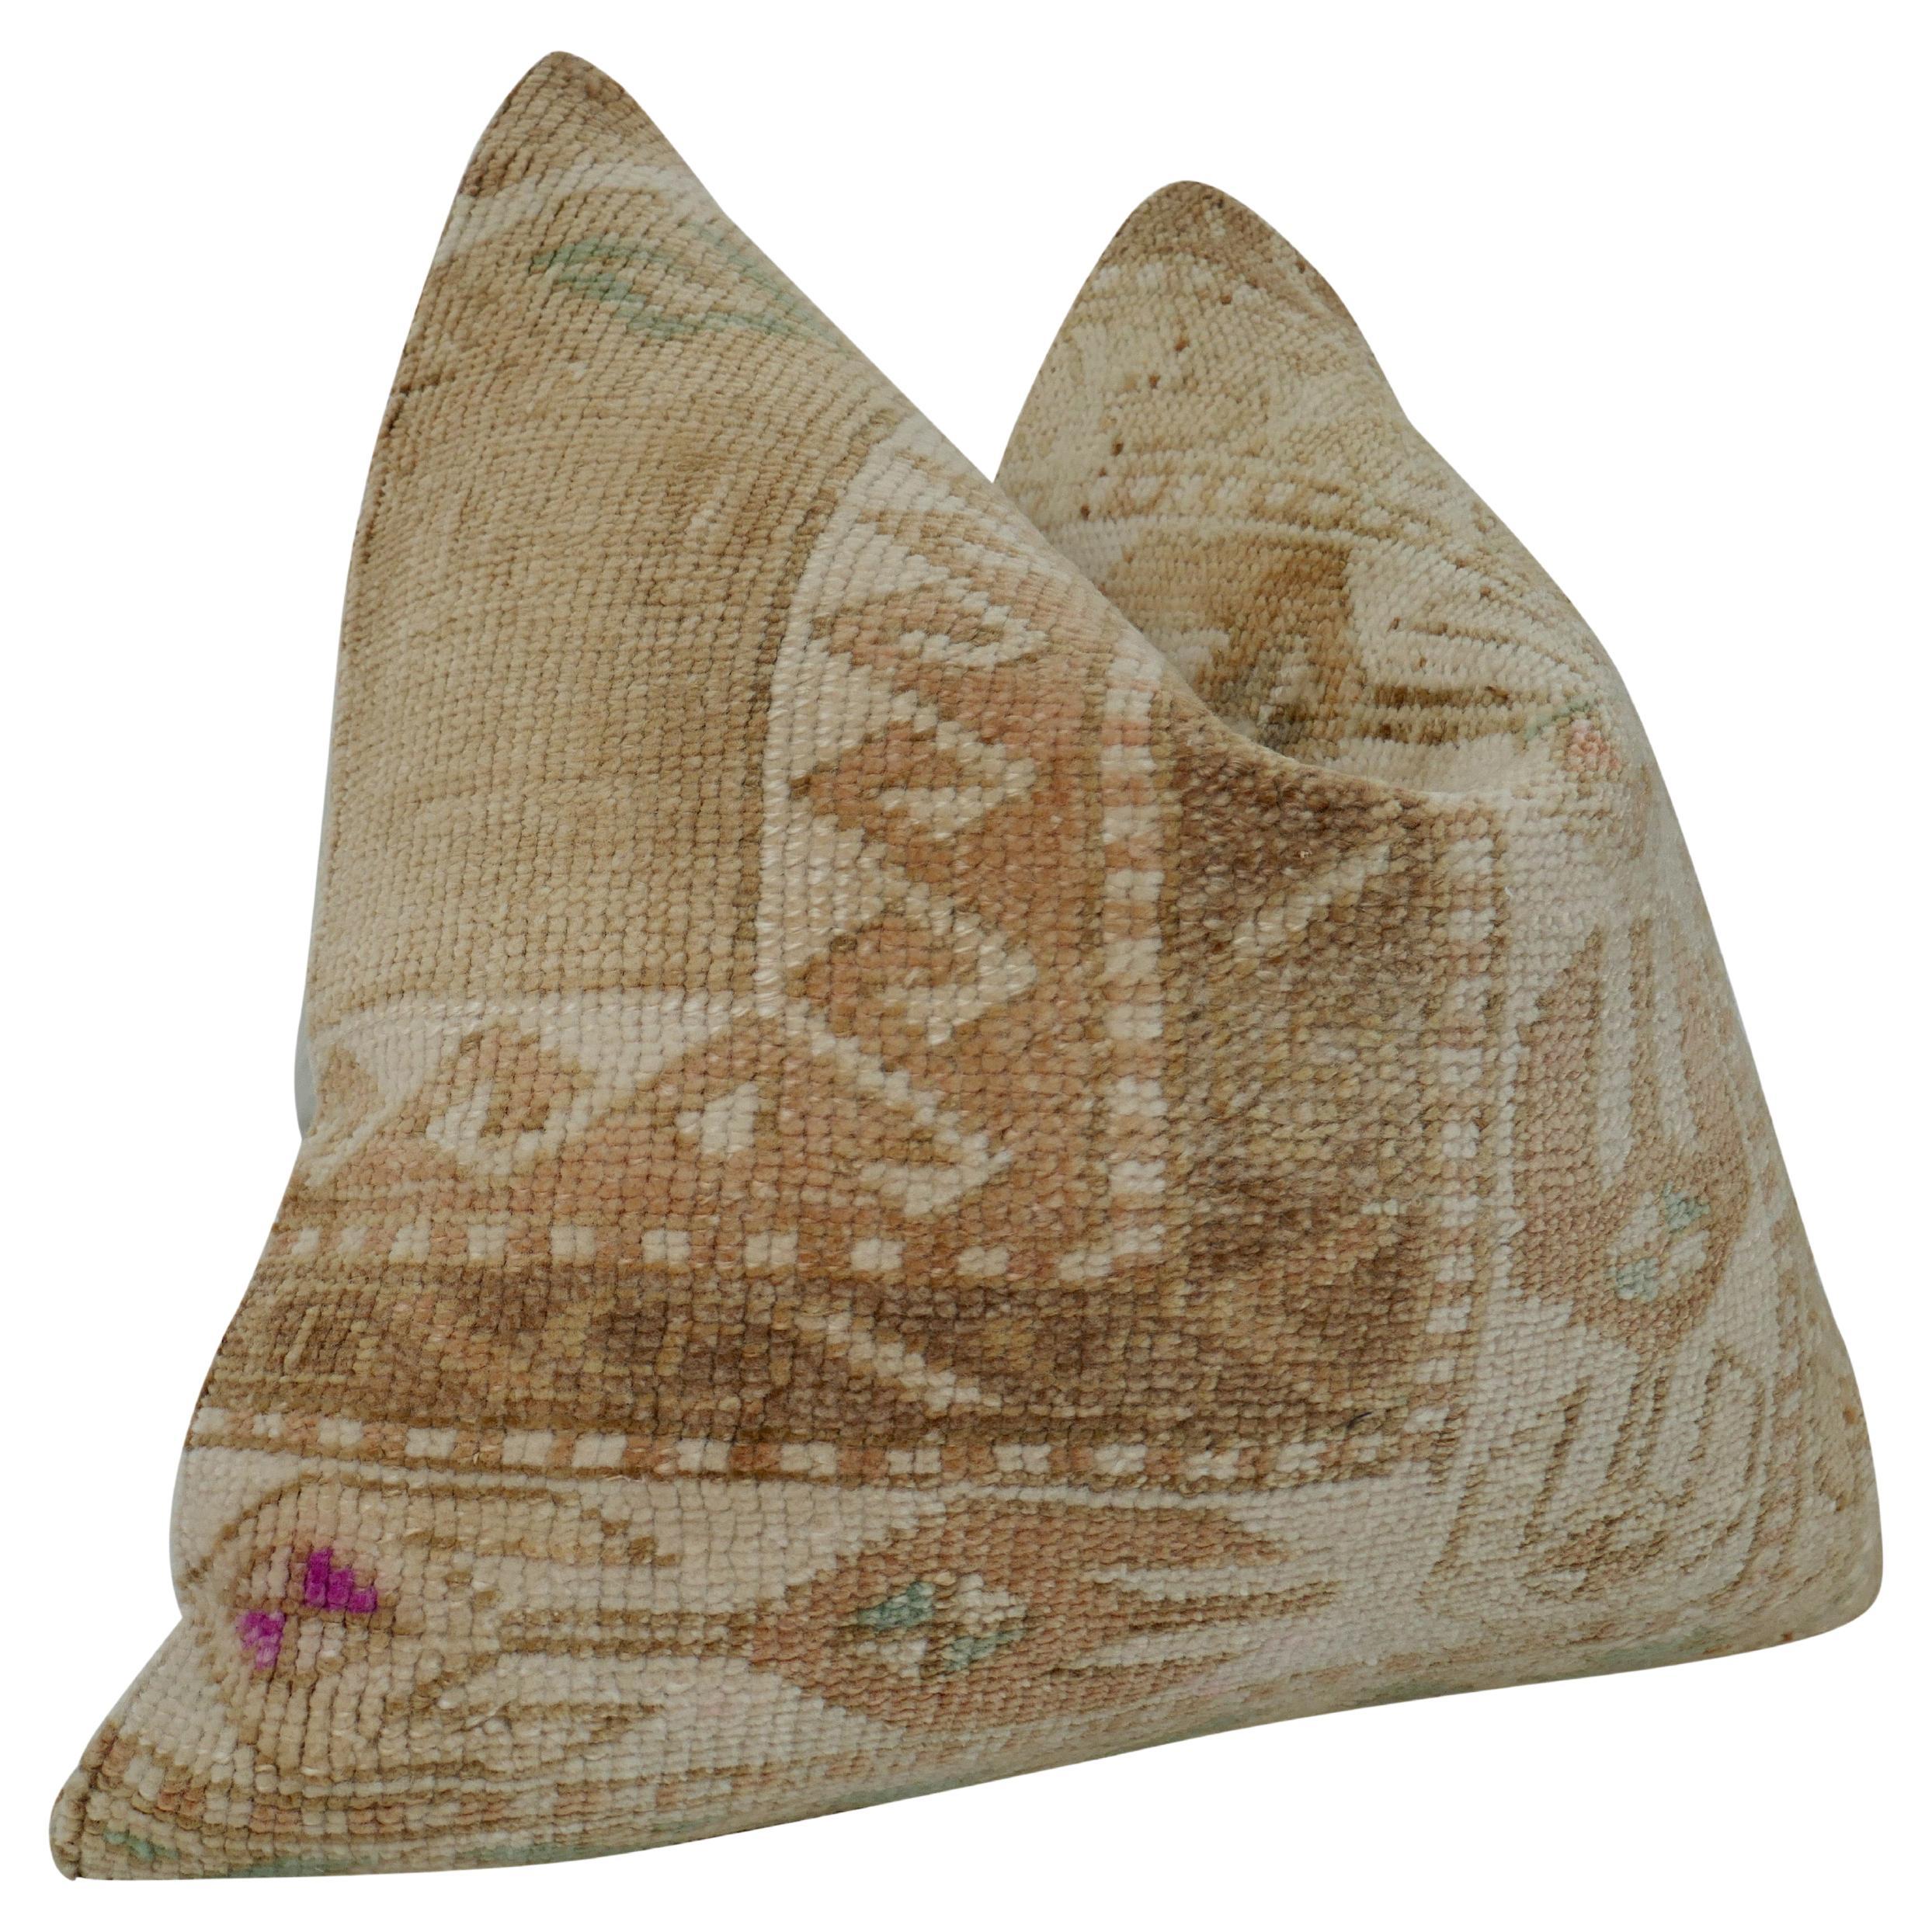 Fragments Identity authentique vintage Anatolian Kilim wool large pillow. Magnifique art textile, tissé à la main à partir de laine pure en un motif à la texture lourde et aux motifs complexes, créant des tons et des textures étonnants. Ces textiles